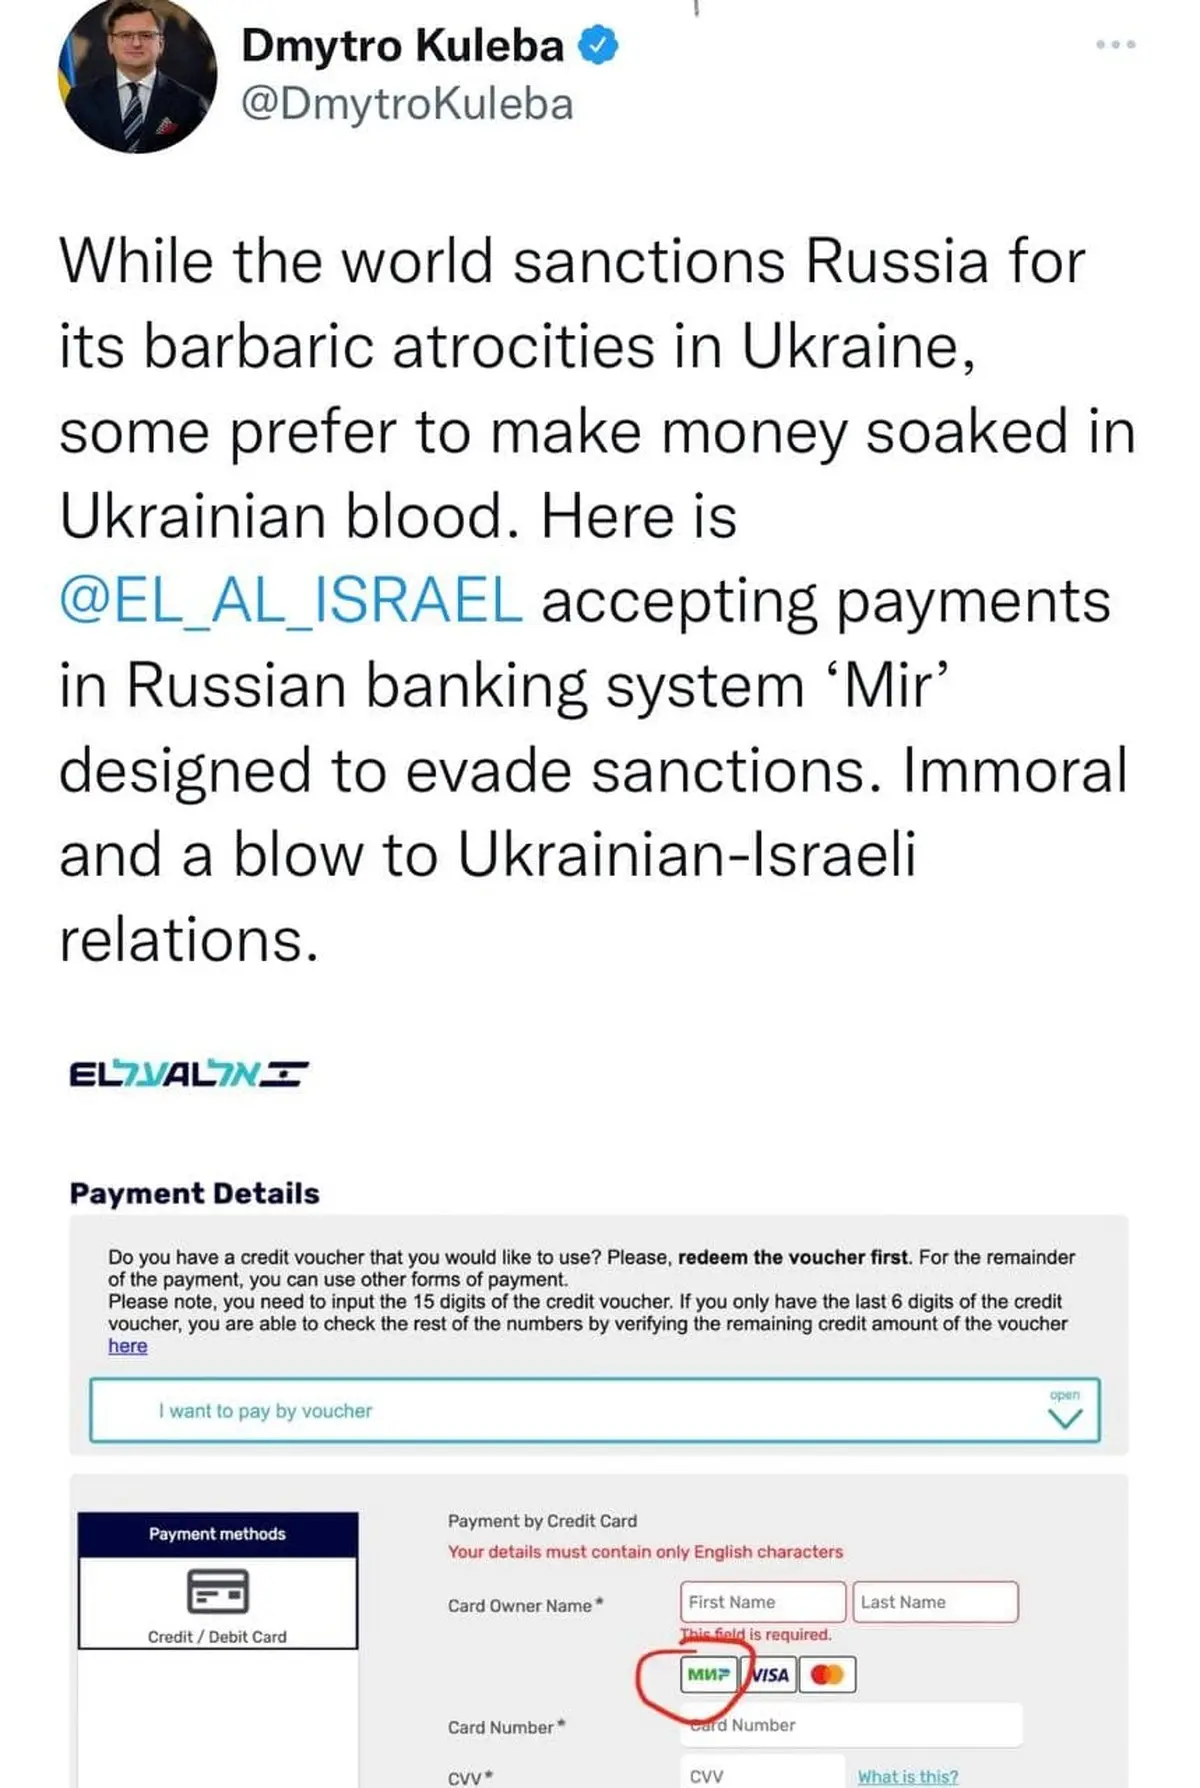 شرکت هواپیمایی اسرائیلی اِل آل همچنان به کمک روسیه ! | برخی هنوز در خون اوکراینی ها نان می زنند و می خورند ! + تصویر 